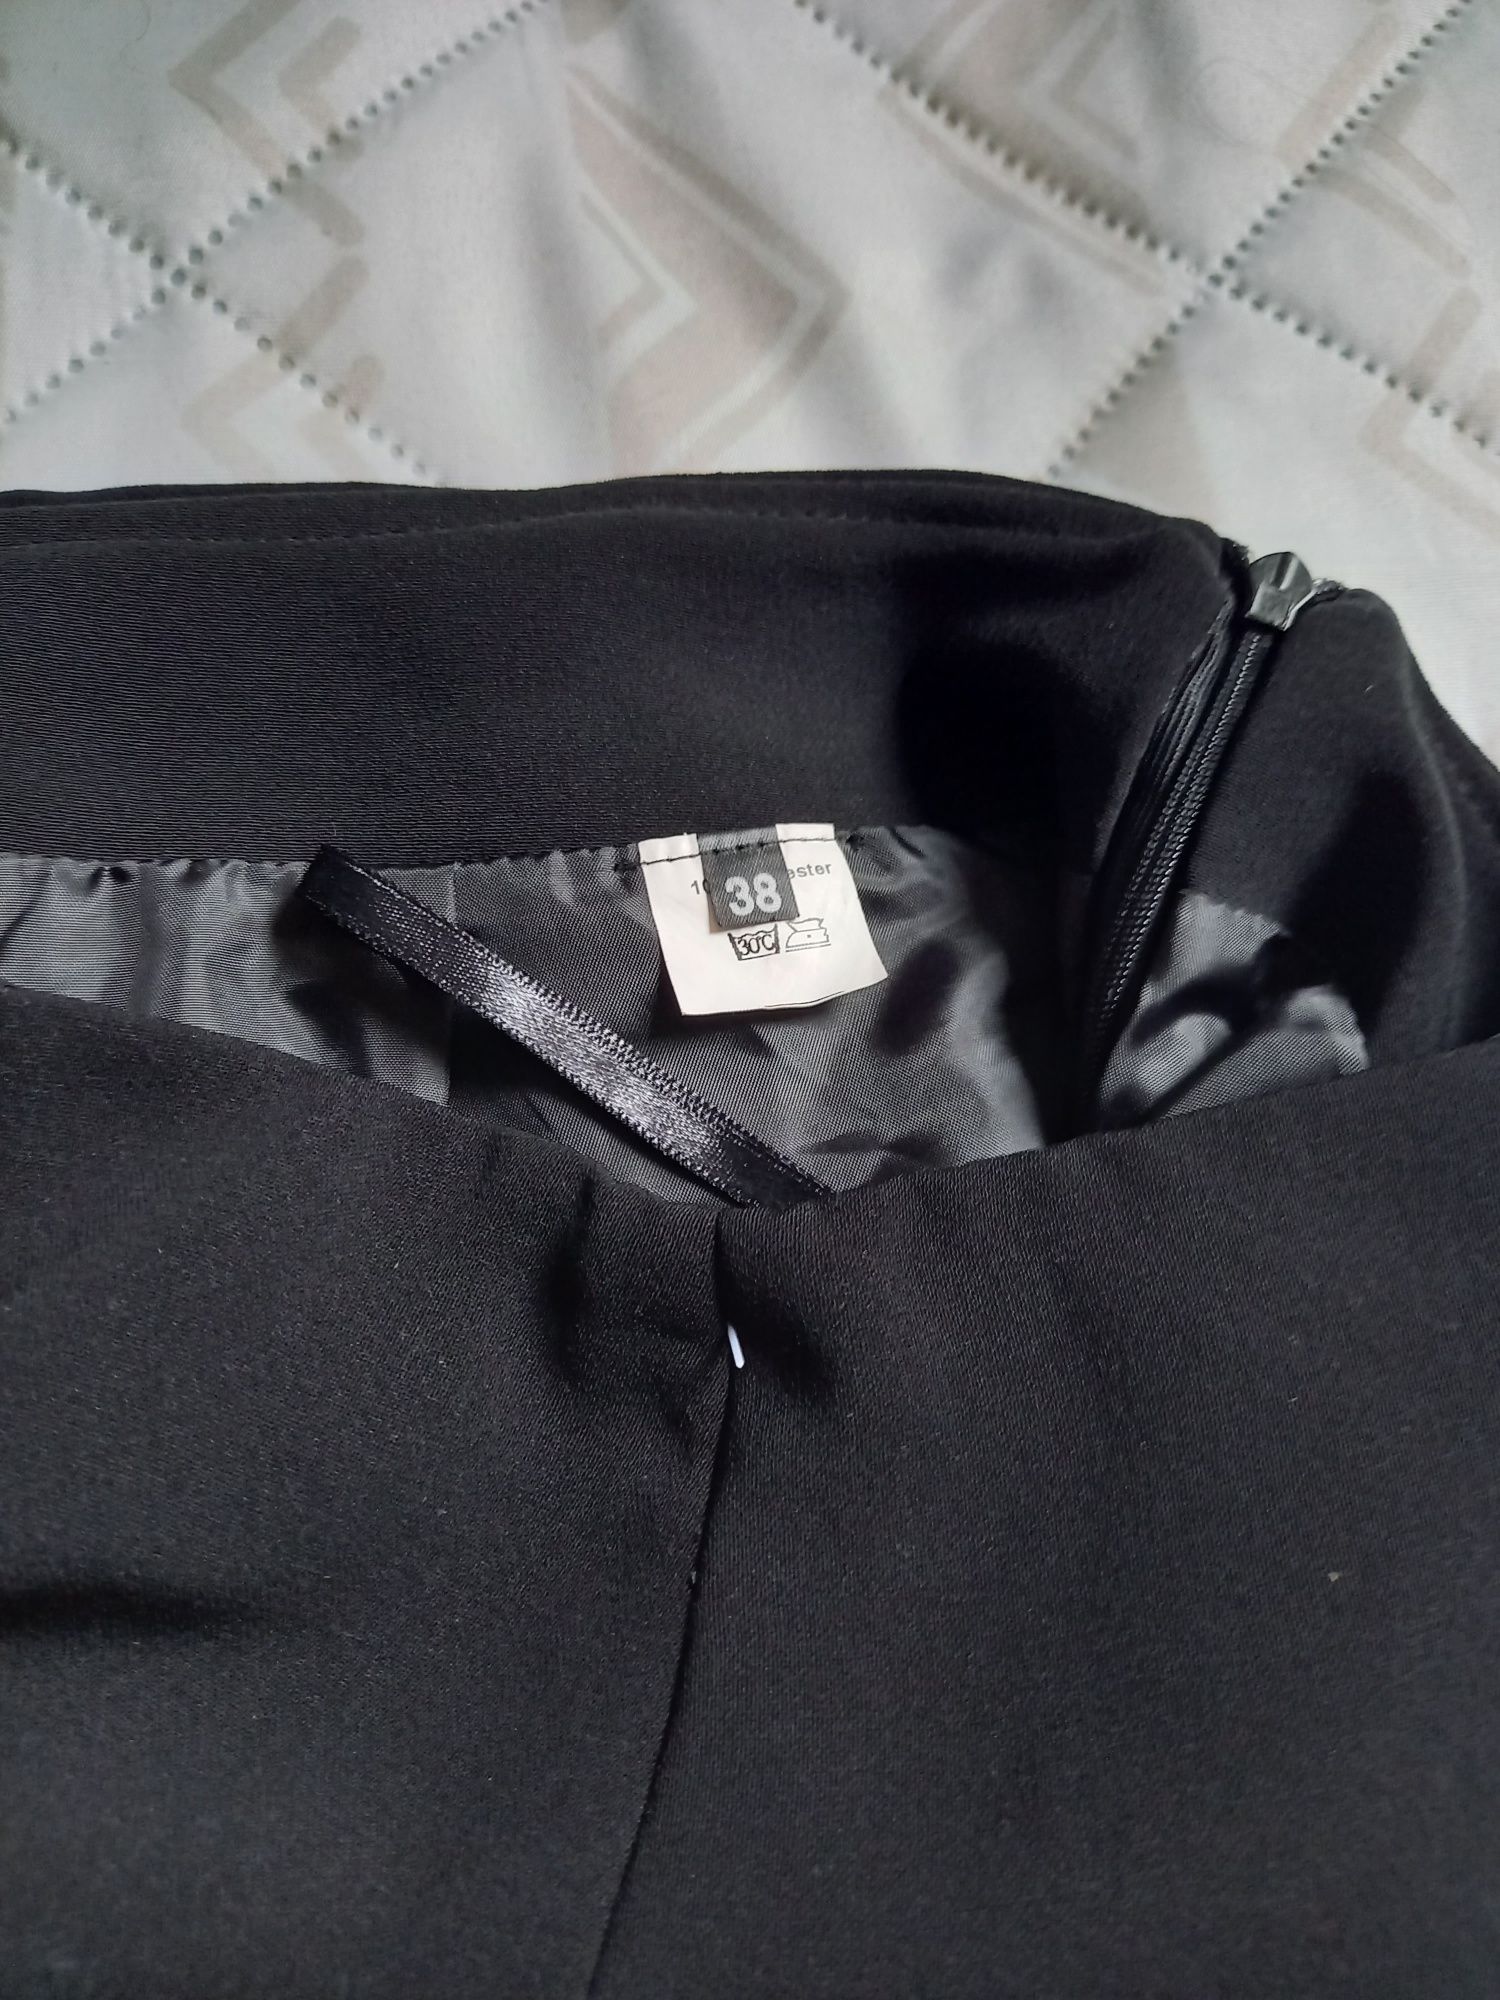 Elegancka na podszewce czarna spódnica ołówkowa na rozmiar M/38.